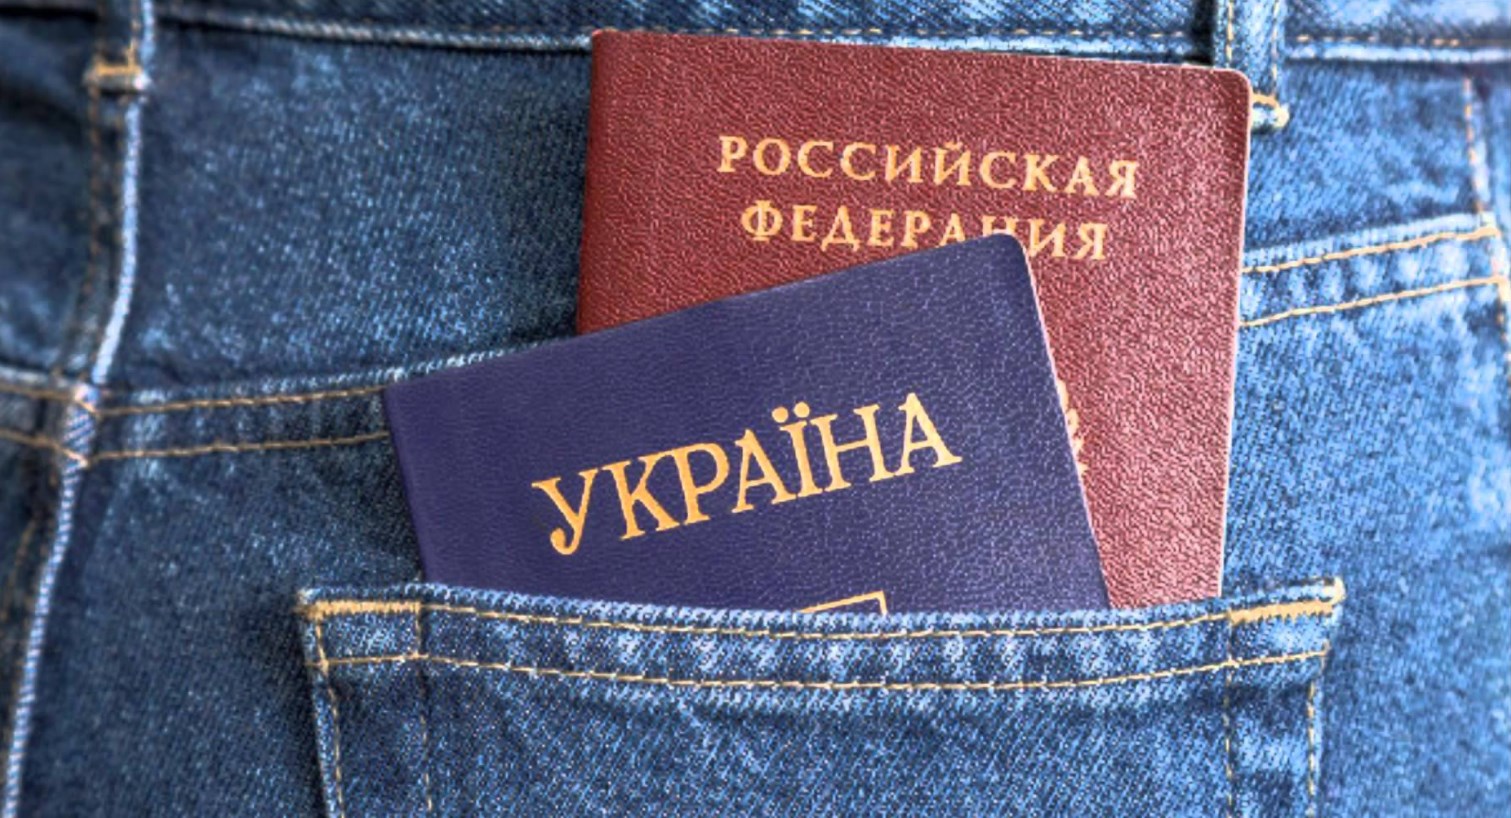 РФ хочет депортировать 4 миллиона украинцев